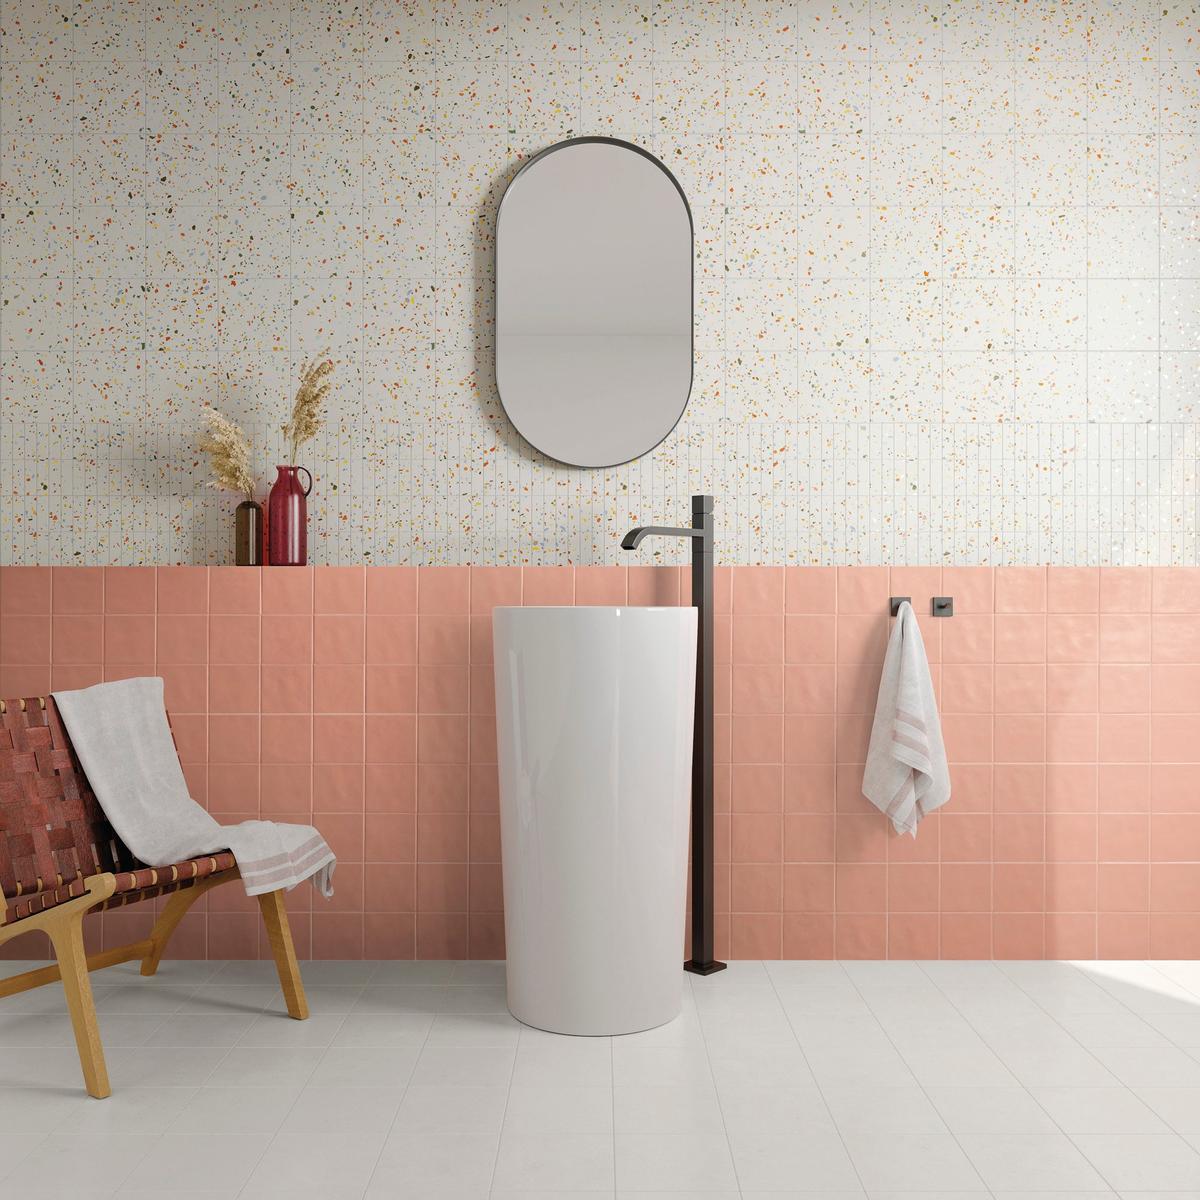 Carrelage Terrazzo blanc avec éclats multicolores 20x20 cm sur un mur de salle de bain tons roses et blancs, avec miroir ovale et lavabo moderne